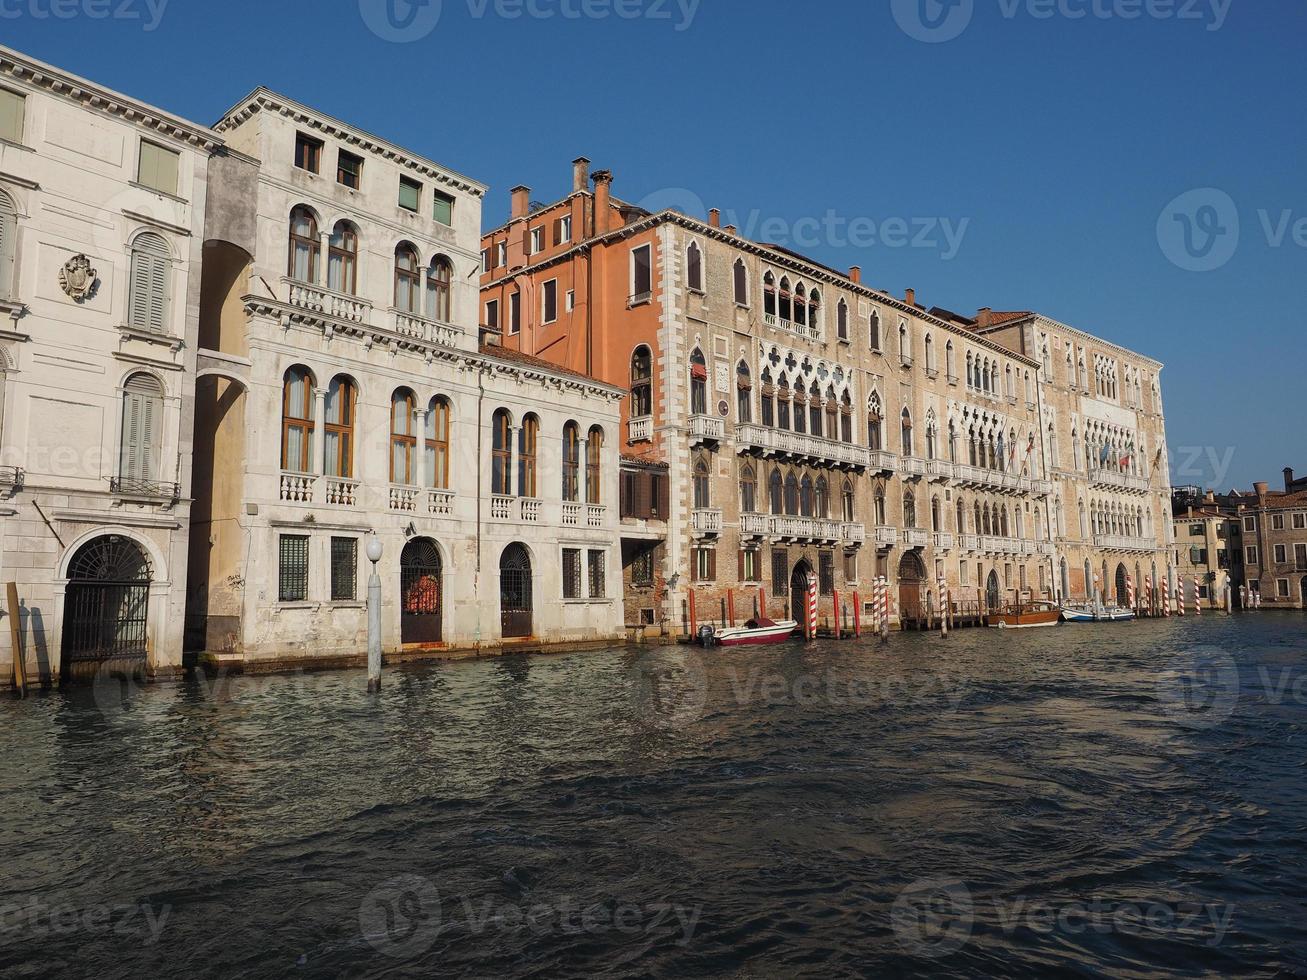 Canal Grande em Veneza foto